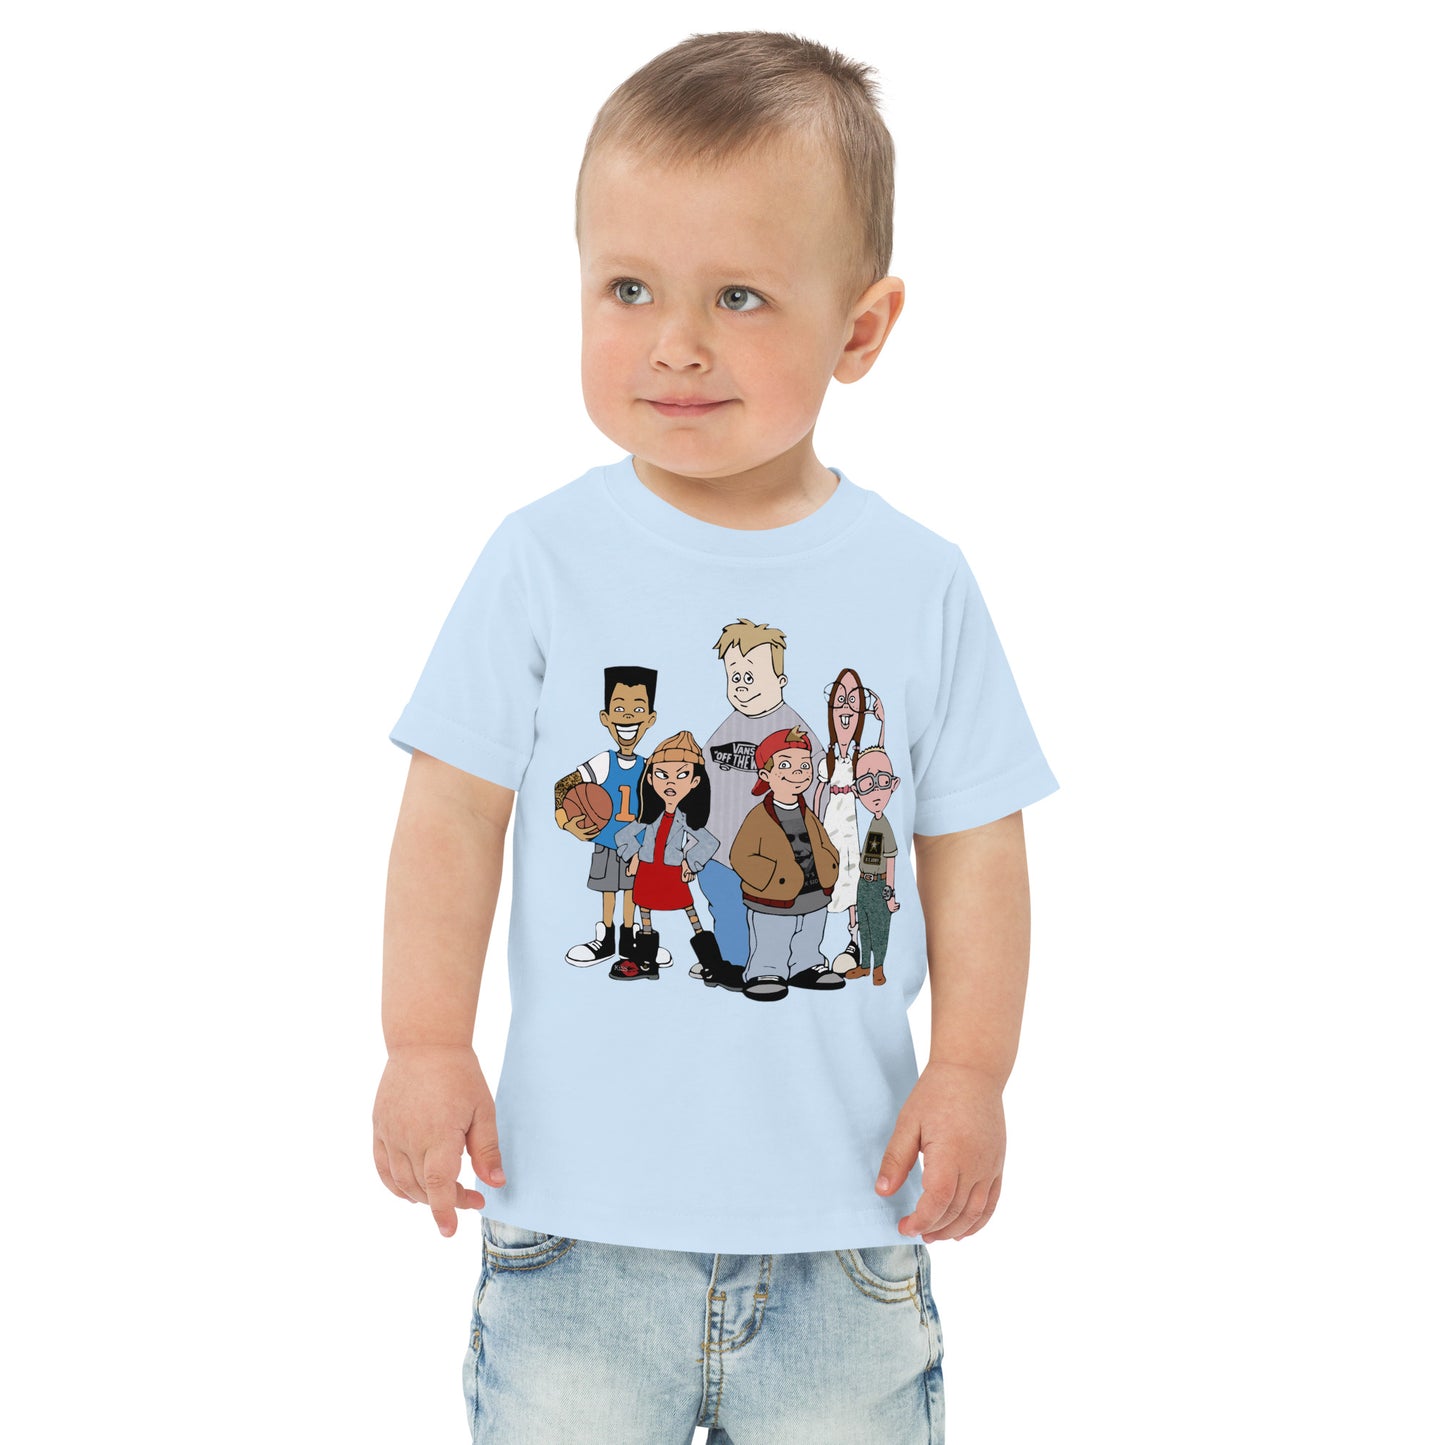 Recess KiSS Kids  jersey t-shirt - Edited Modern version TV Show inspired TJ Detweiler